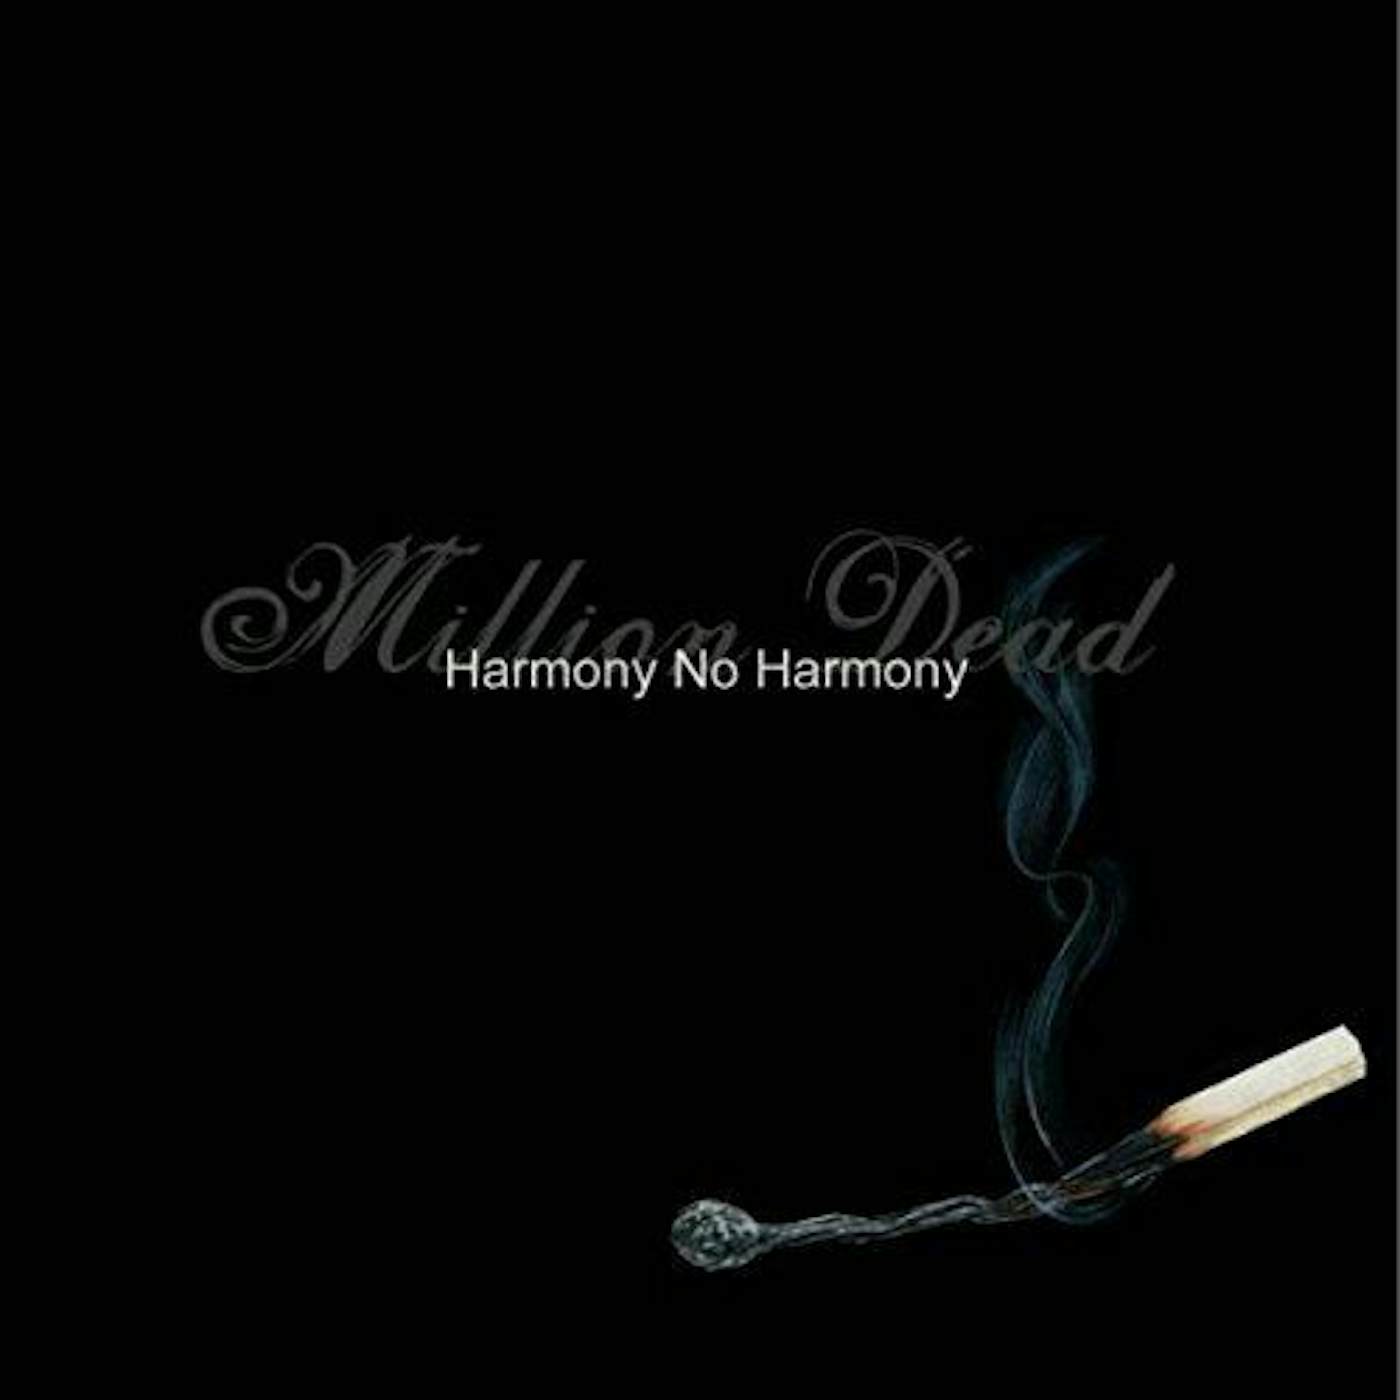 Million Dead Harmony No Harmony Vinyl Record